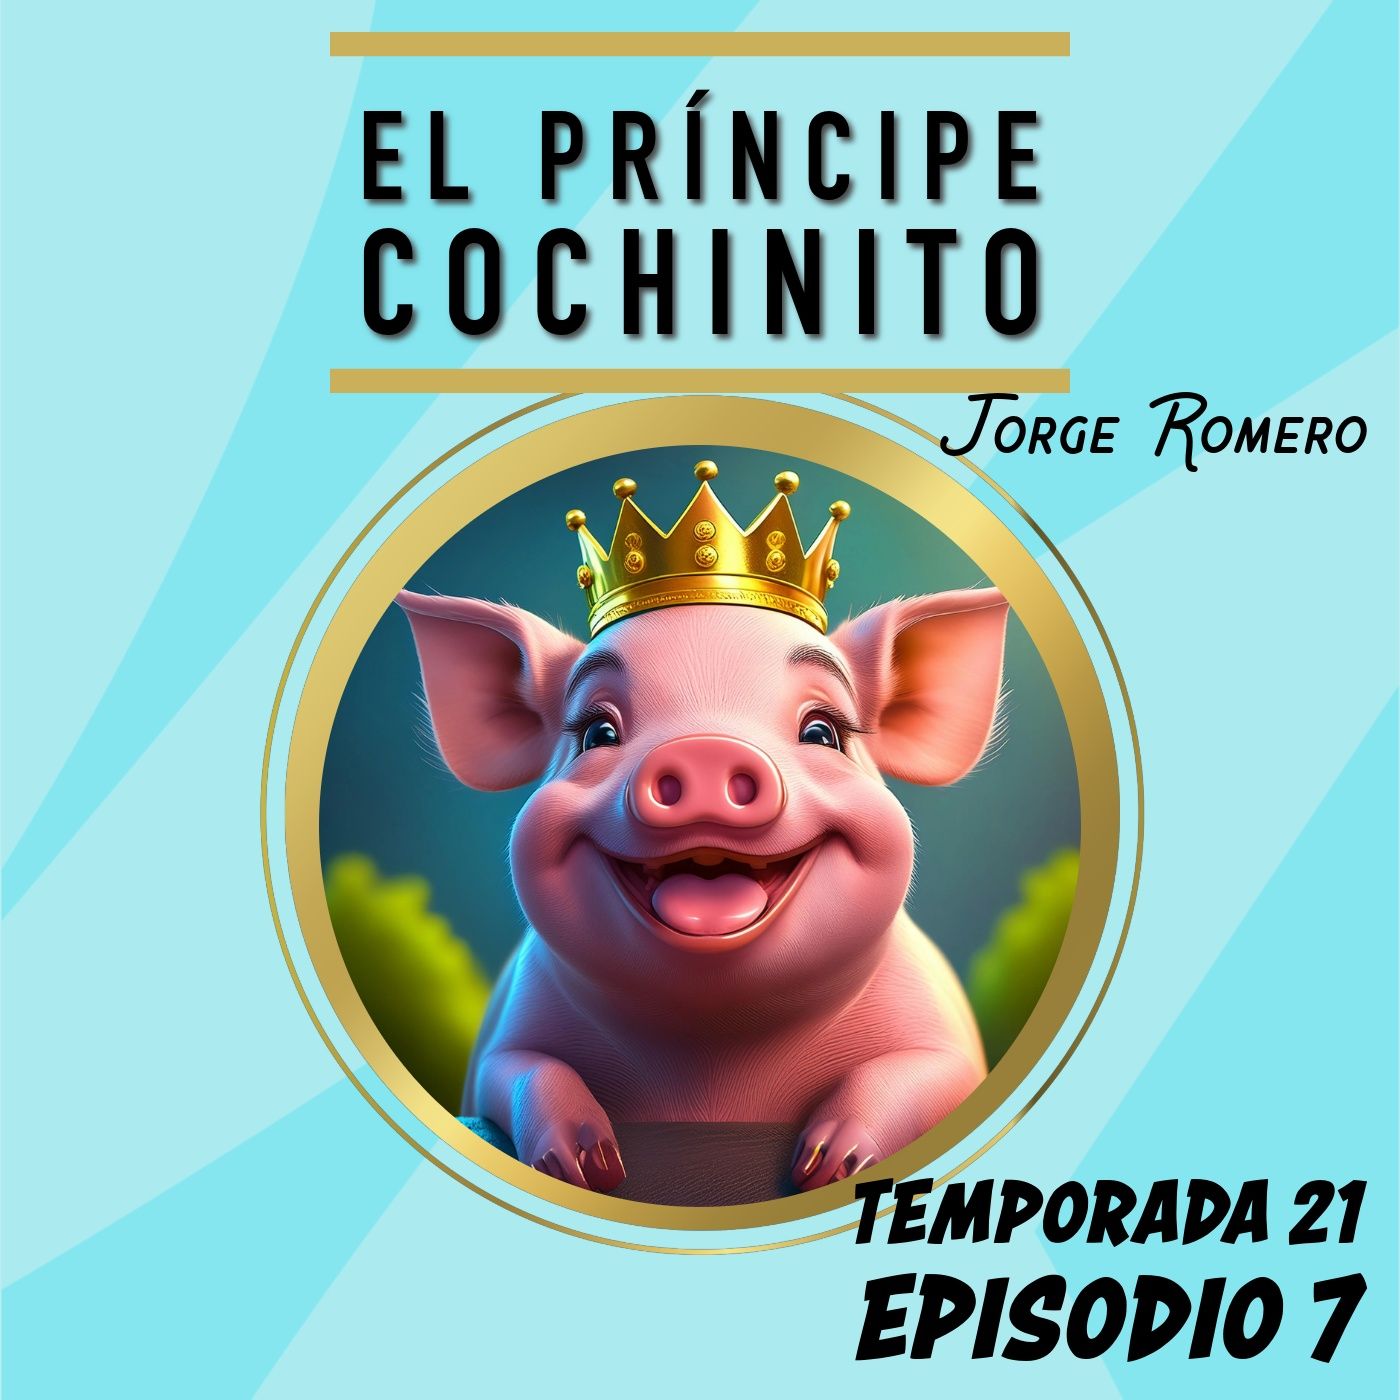 Cuento infantil: El príncipe cochinito - Temporada 21 Episodio 7